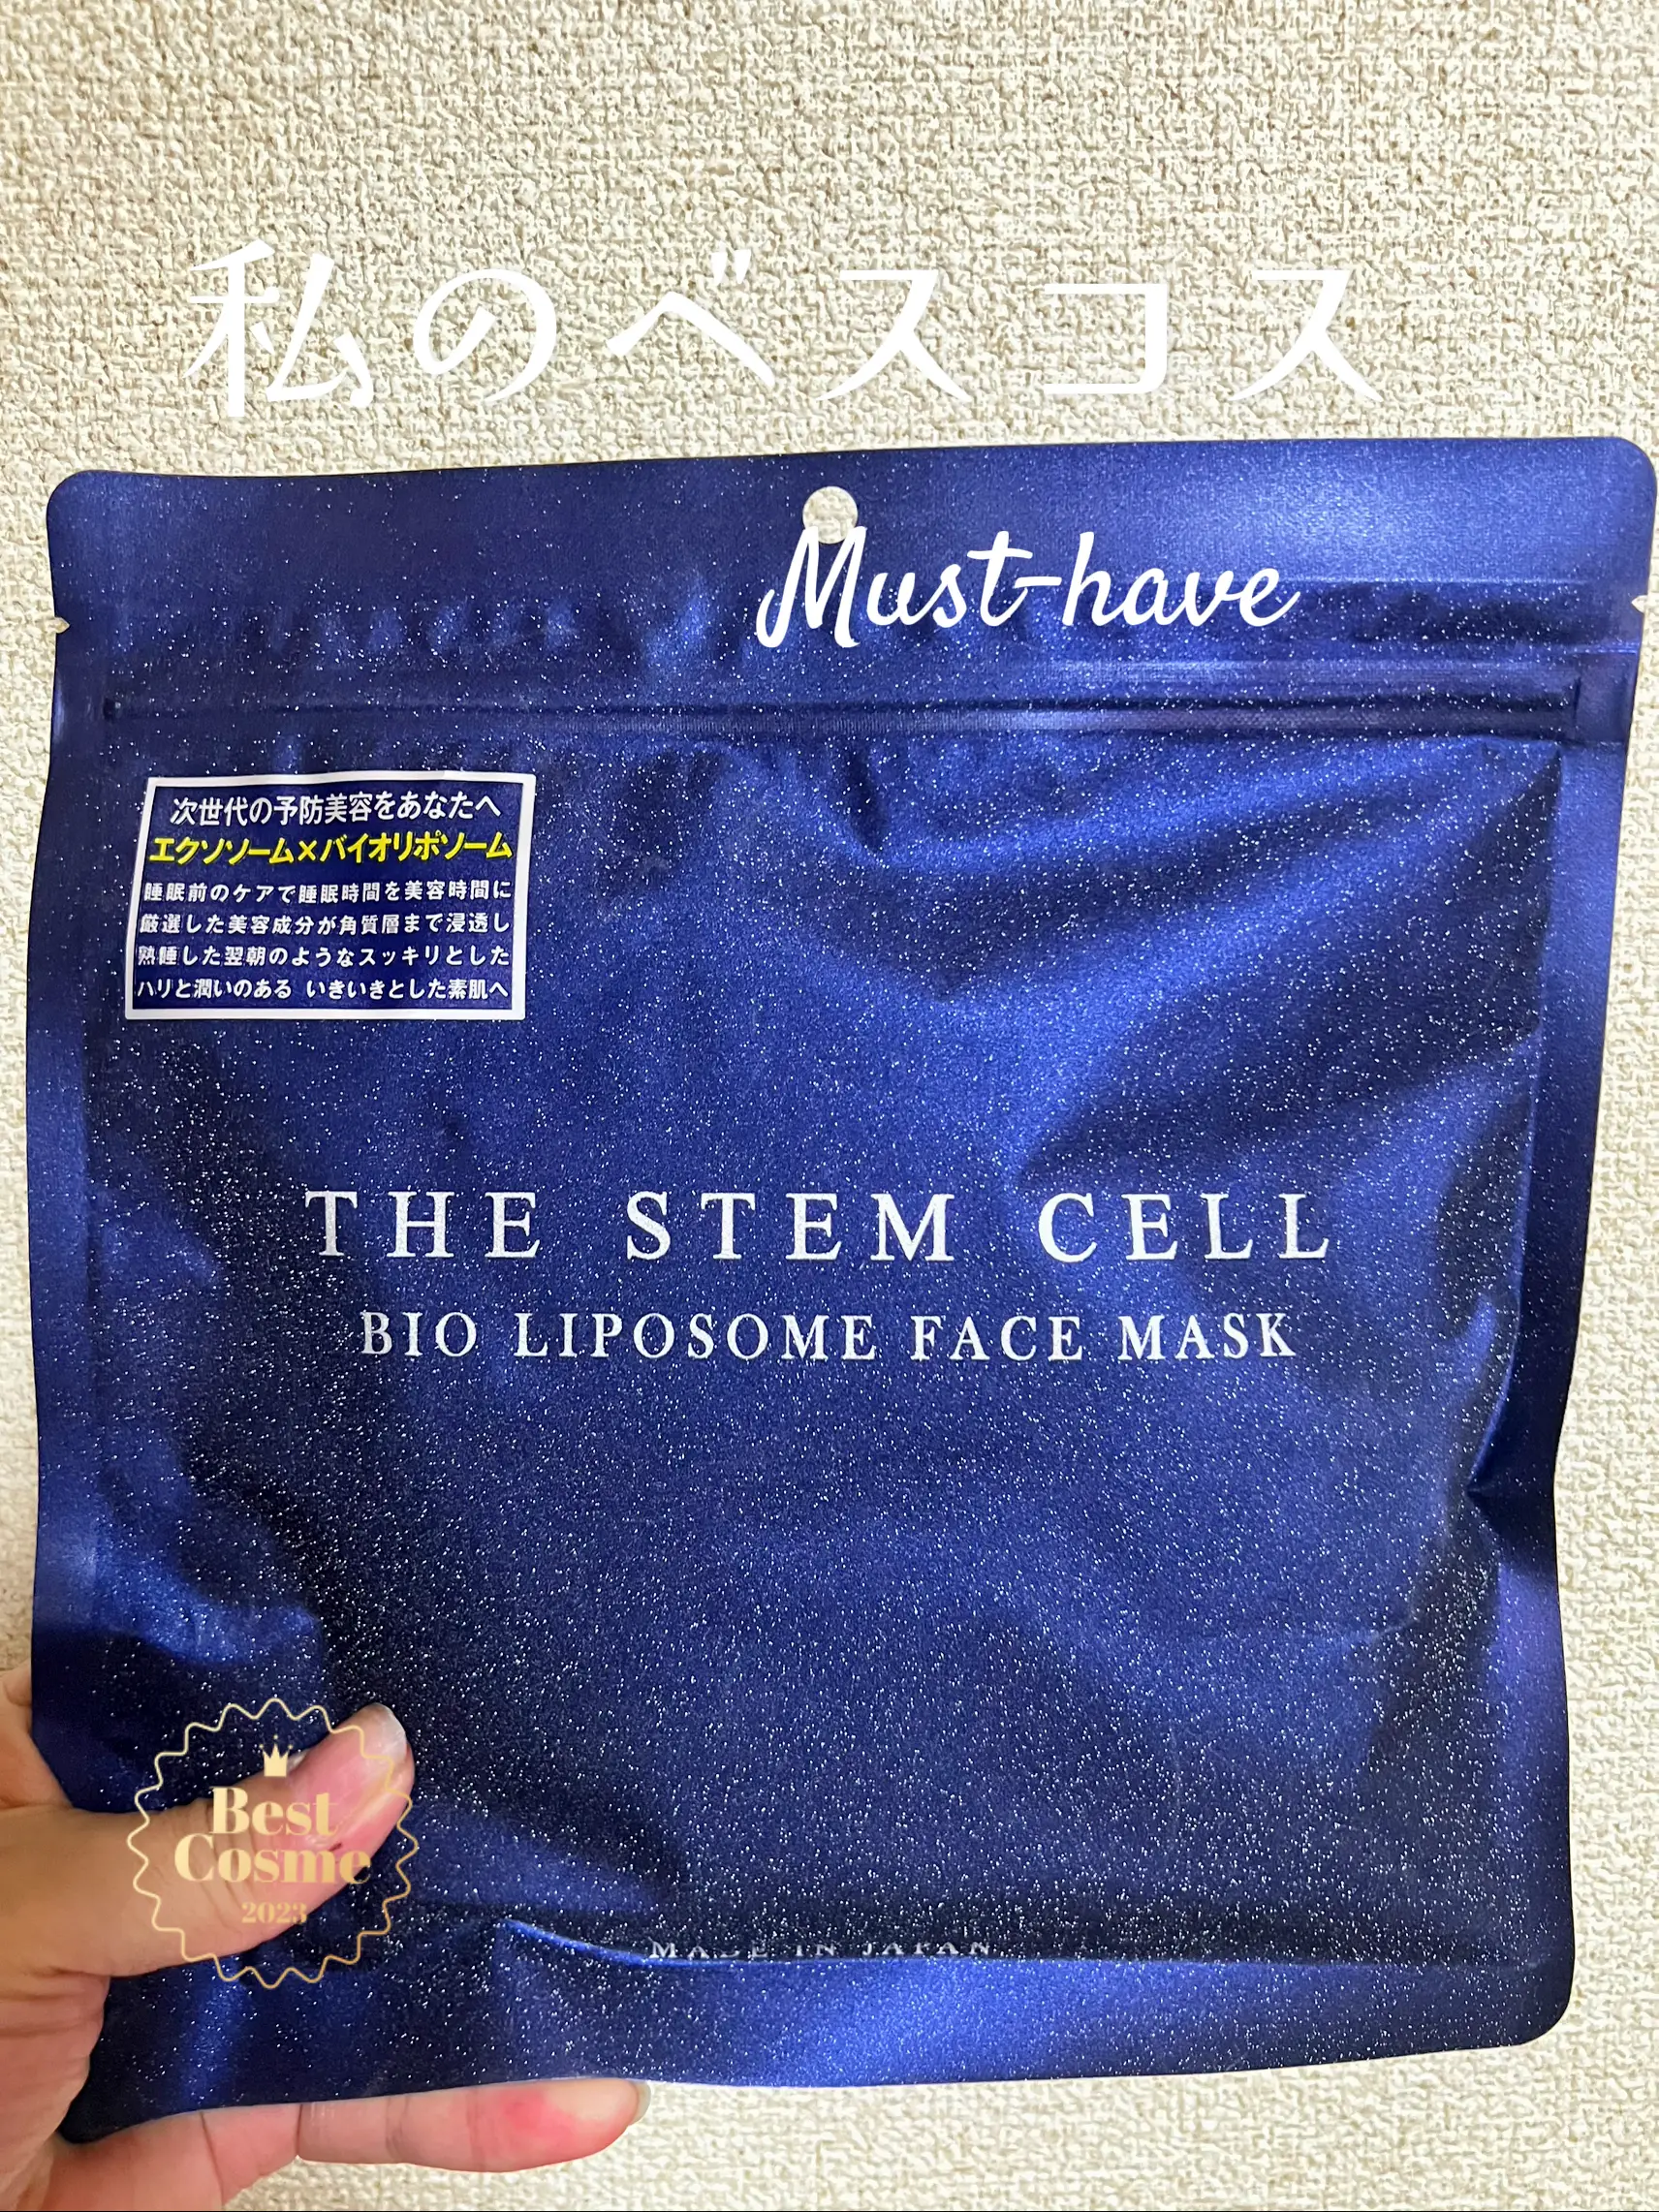 THE STEM CELL エクソソーム×バイオリポソーム 高級フェイスマスク